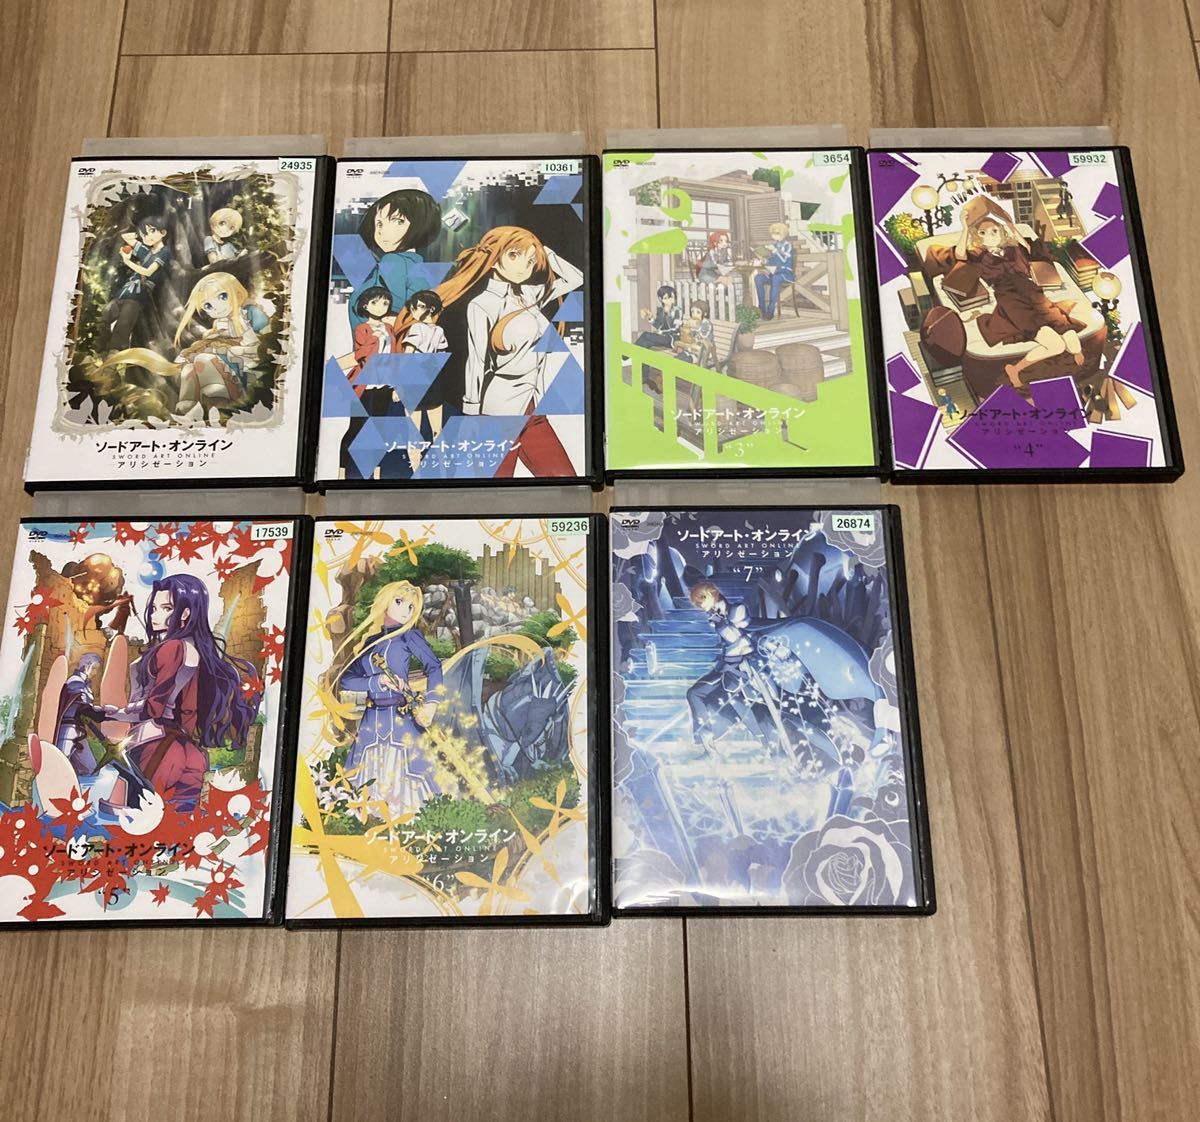 ソードアート・オンライン アリシゼーション 1〜7巻セット (全8巻中、7巻) DVD レンタルアップ品